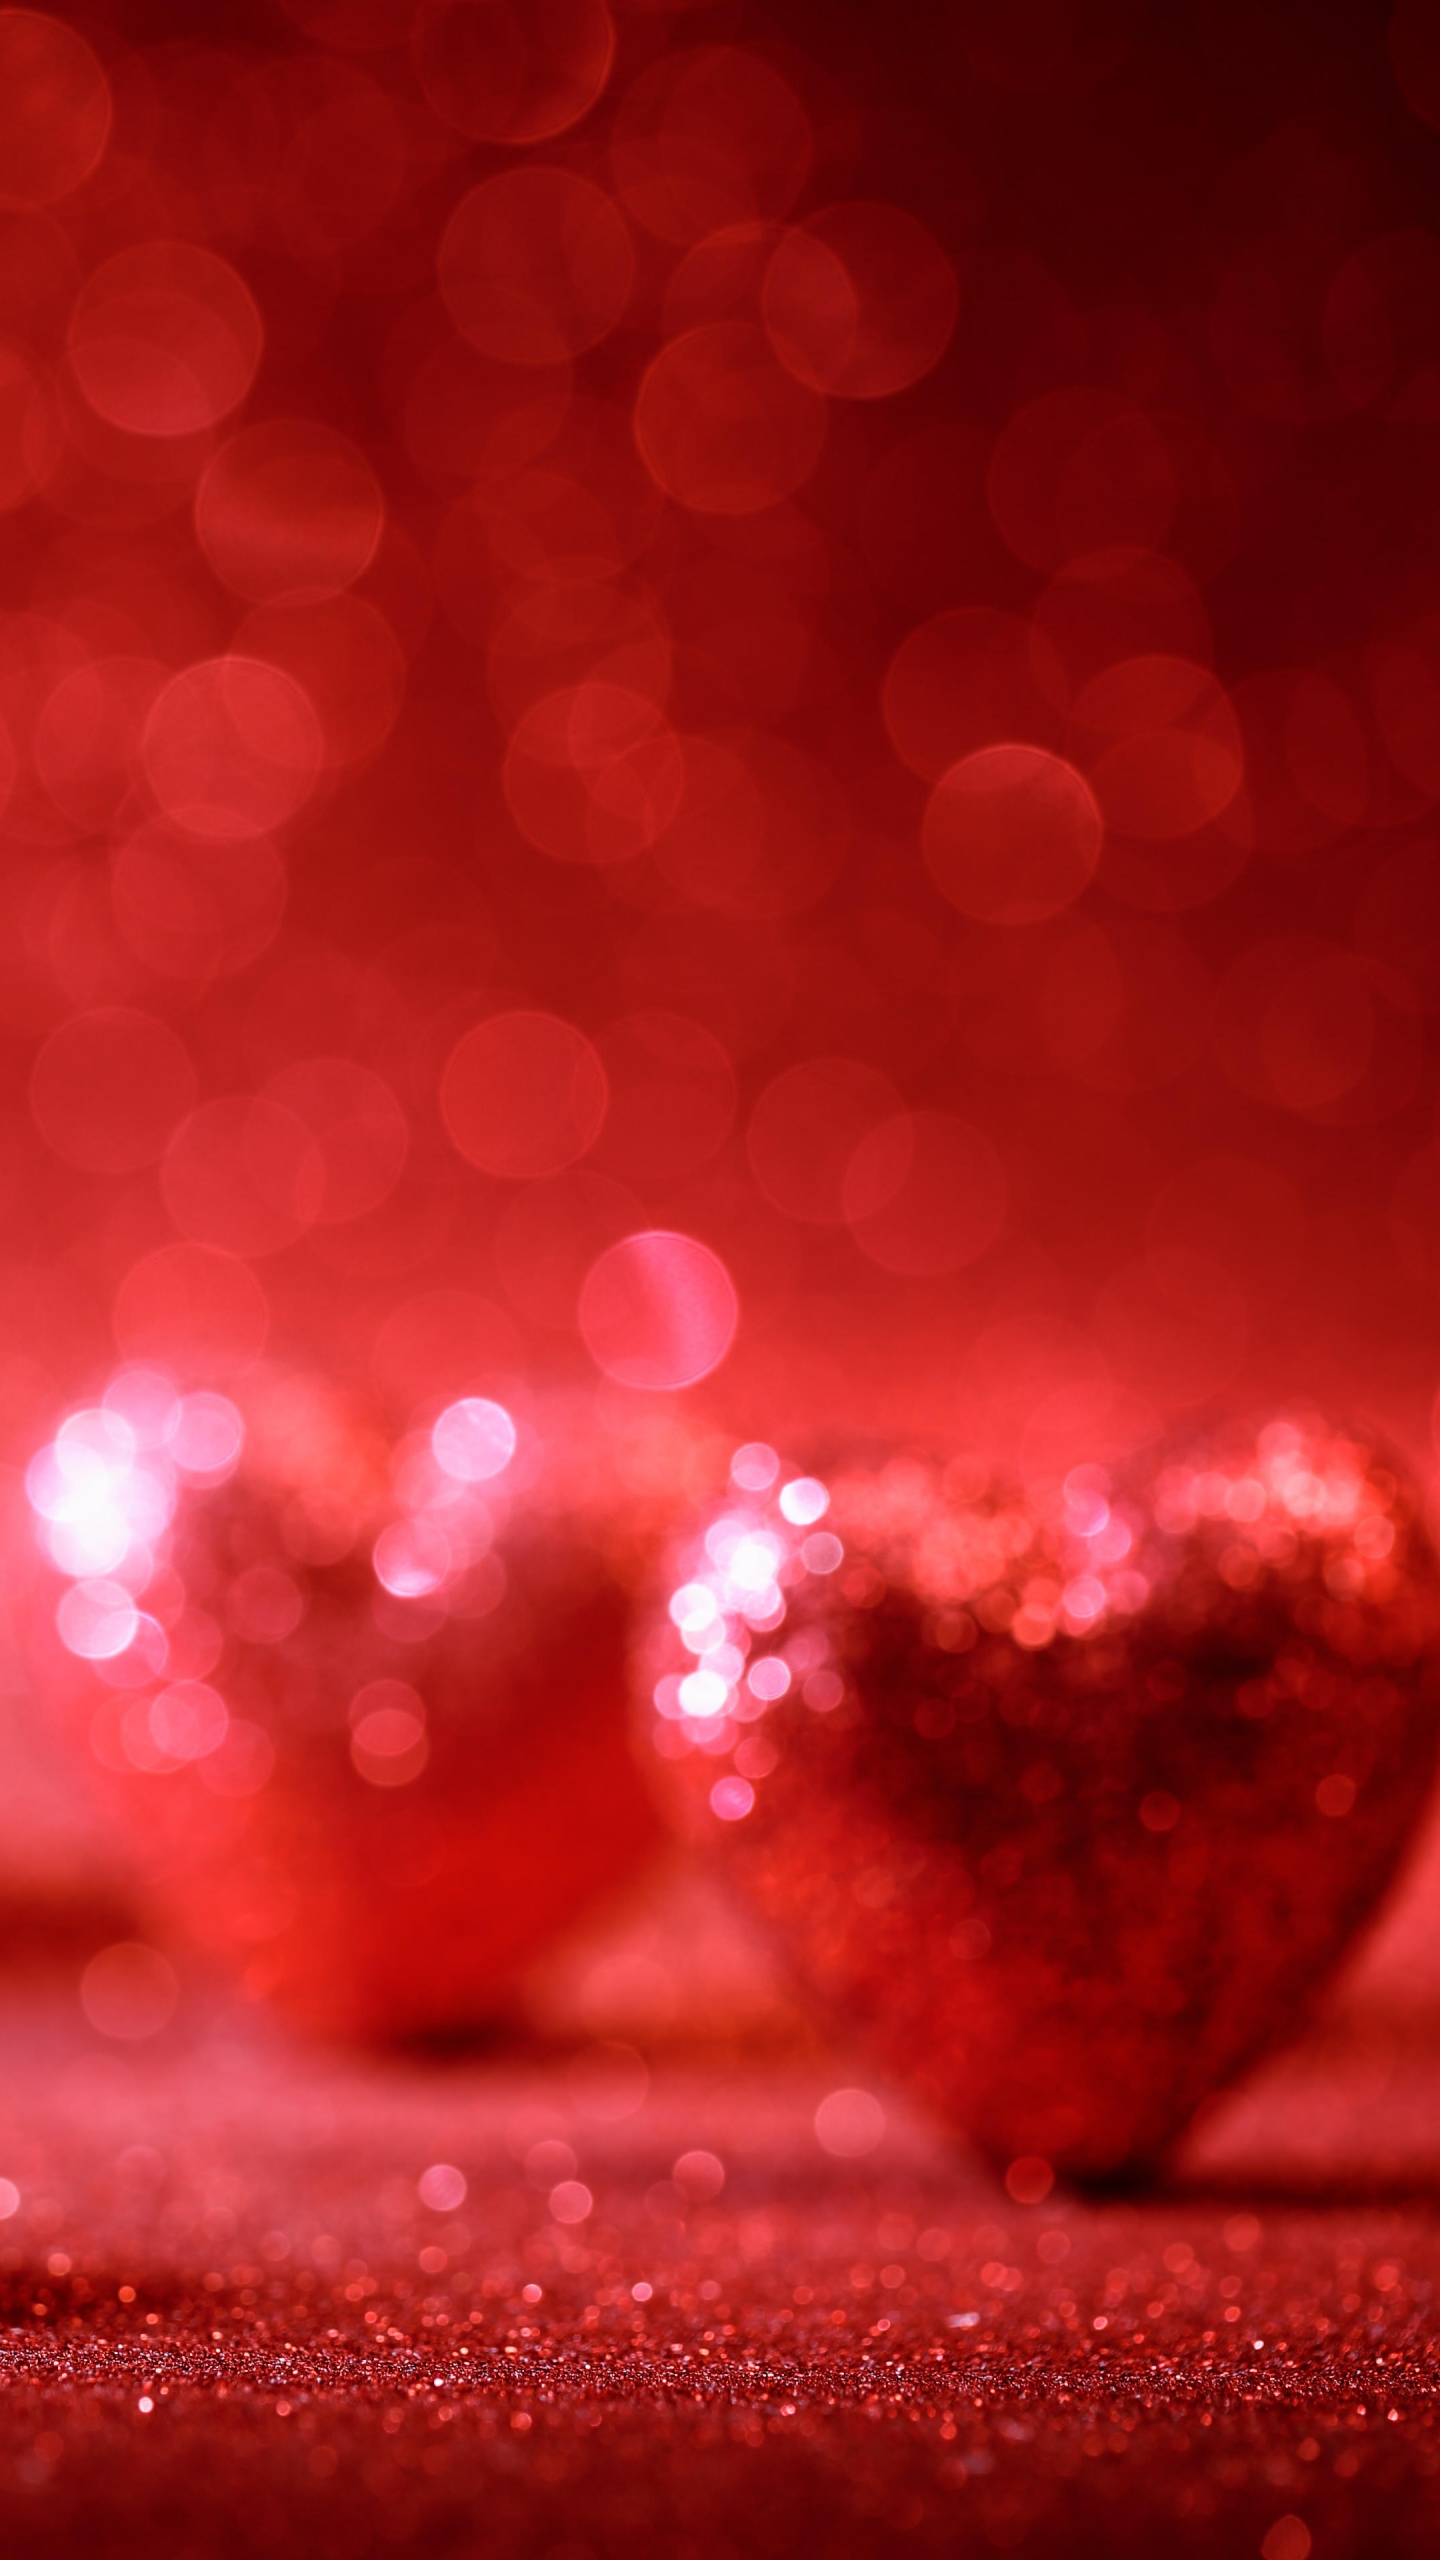 el Día de San Valentín, Coraz, Rojo, Amor, Romanticismo. Wallpaper in 1440x2560 Resolution